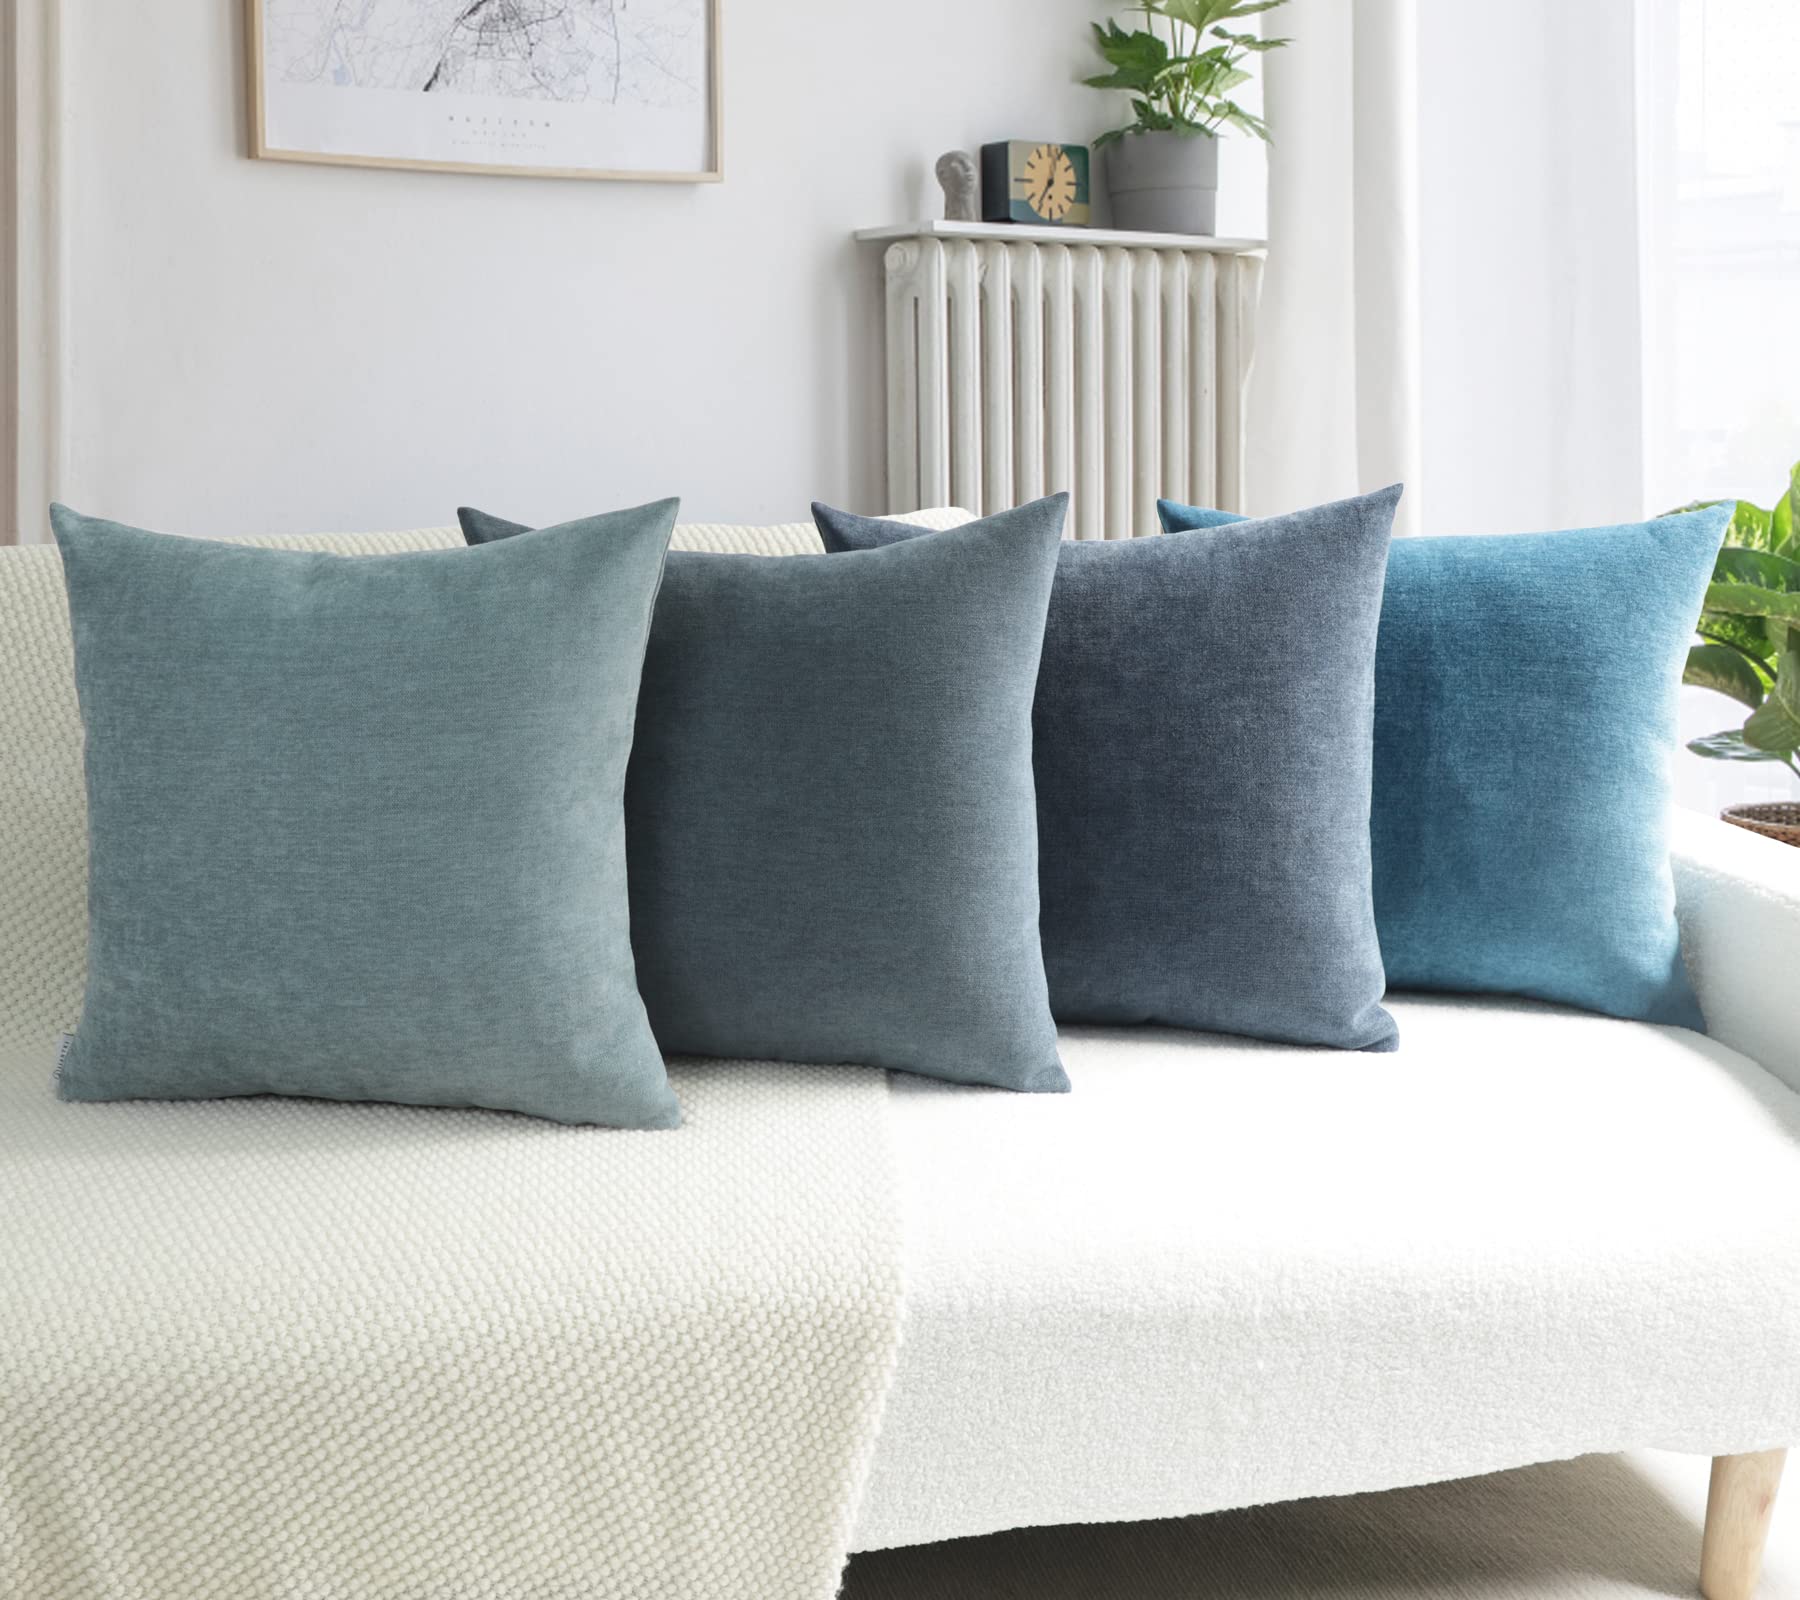 Mua JIANTKJ Decorative Throw Pillow Covers 18x18, Set of 4 Soft ...